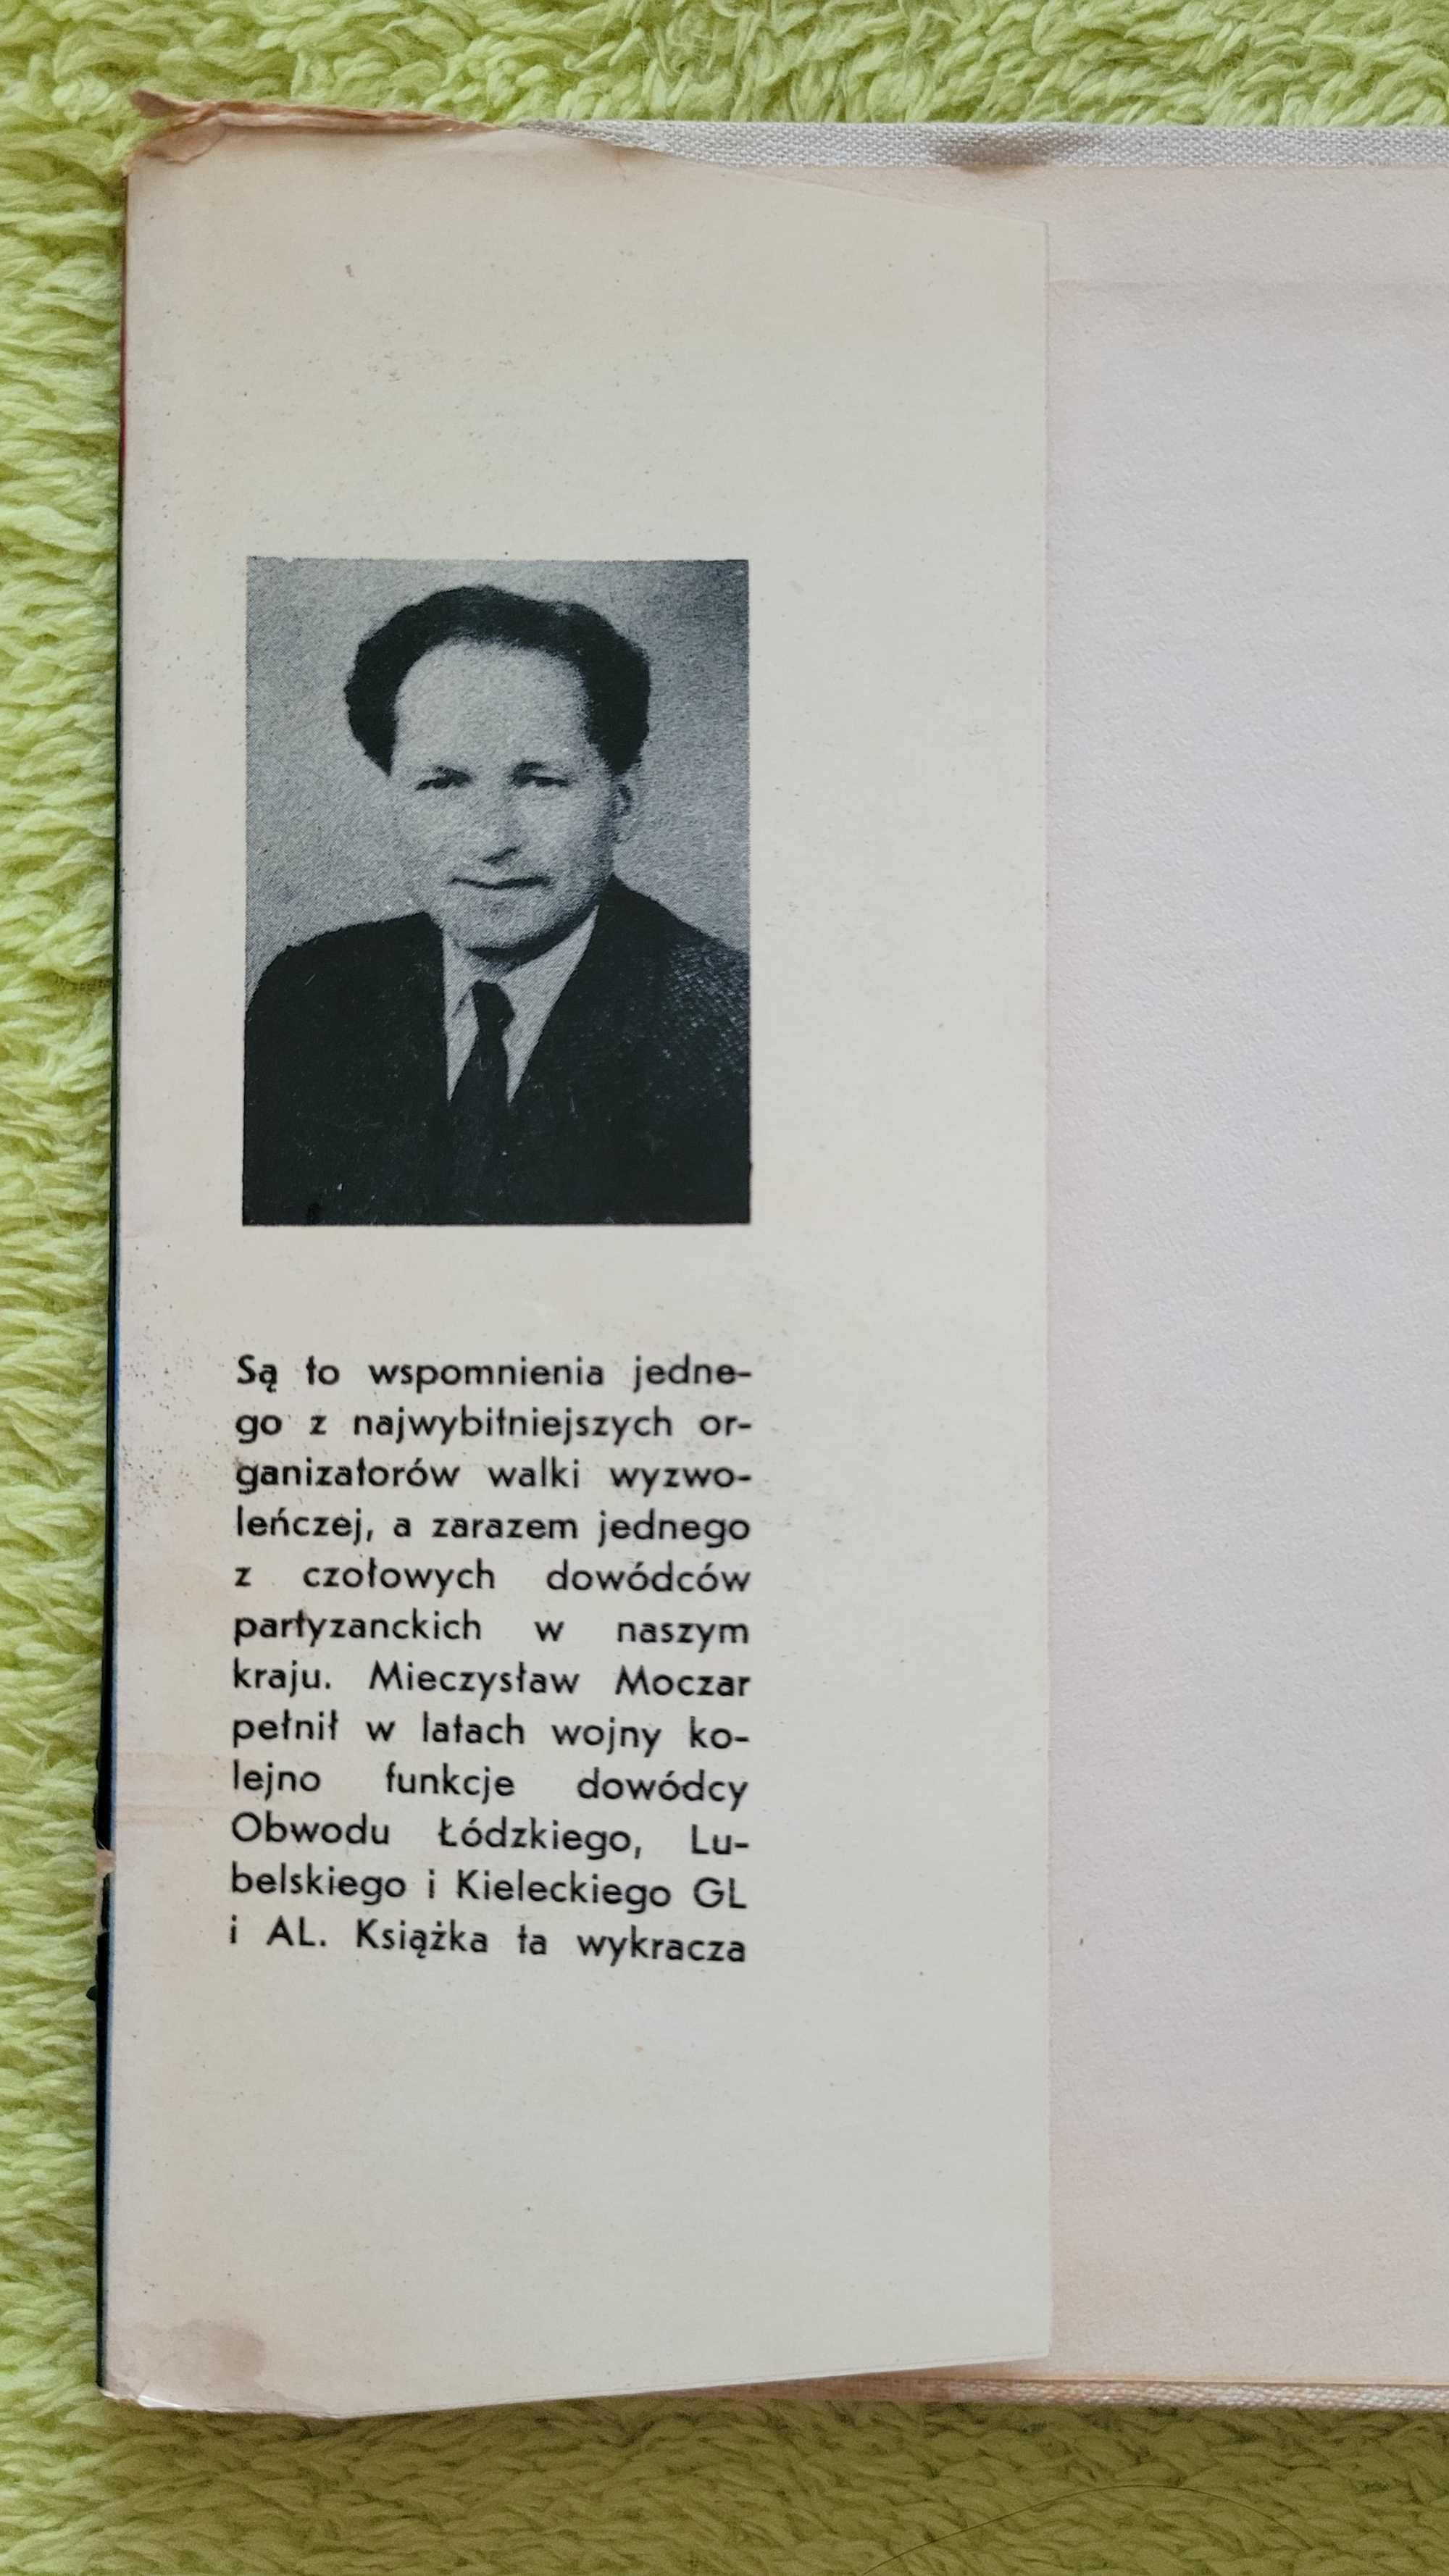 Książka: "Barwy walki, Mieczysław Moczar